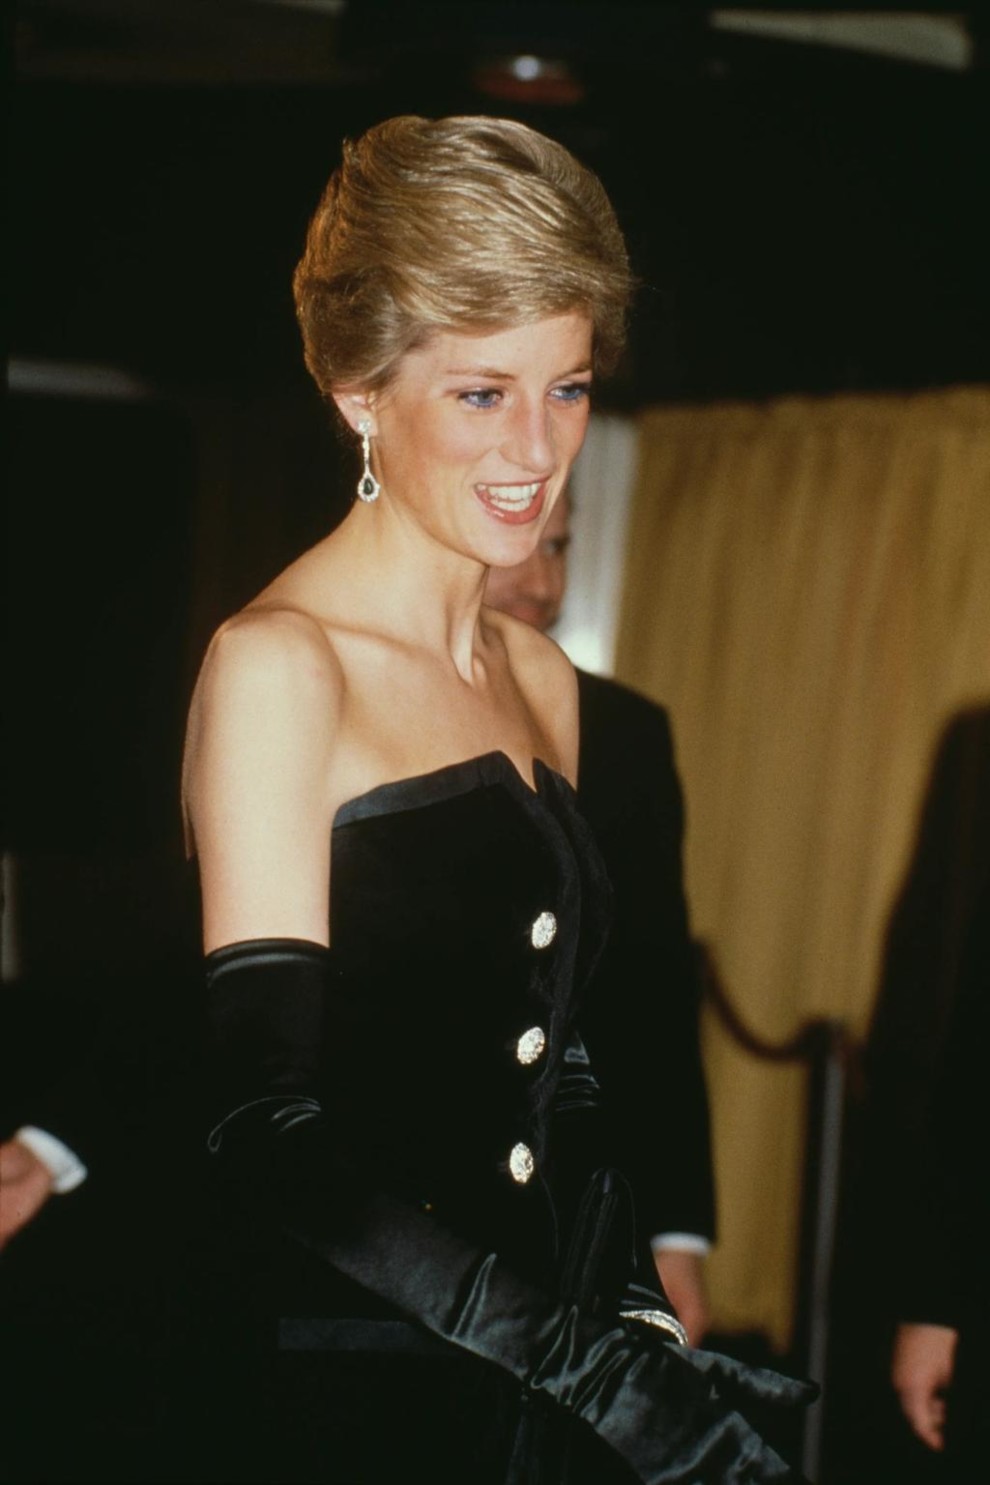 Принцеса Діана в оксамитовій сукні на прем’єрі фільму «Небезпечні зв’язки», березень 1989 року  